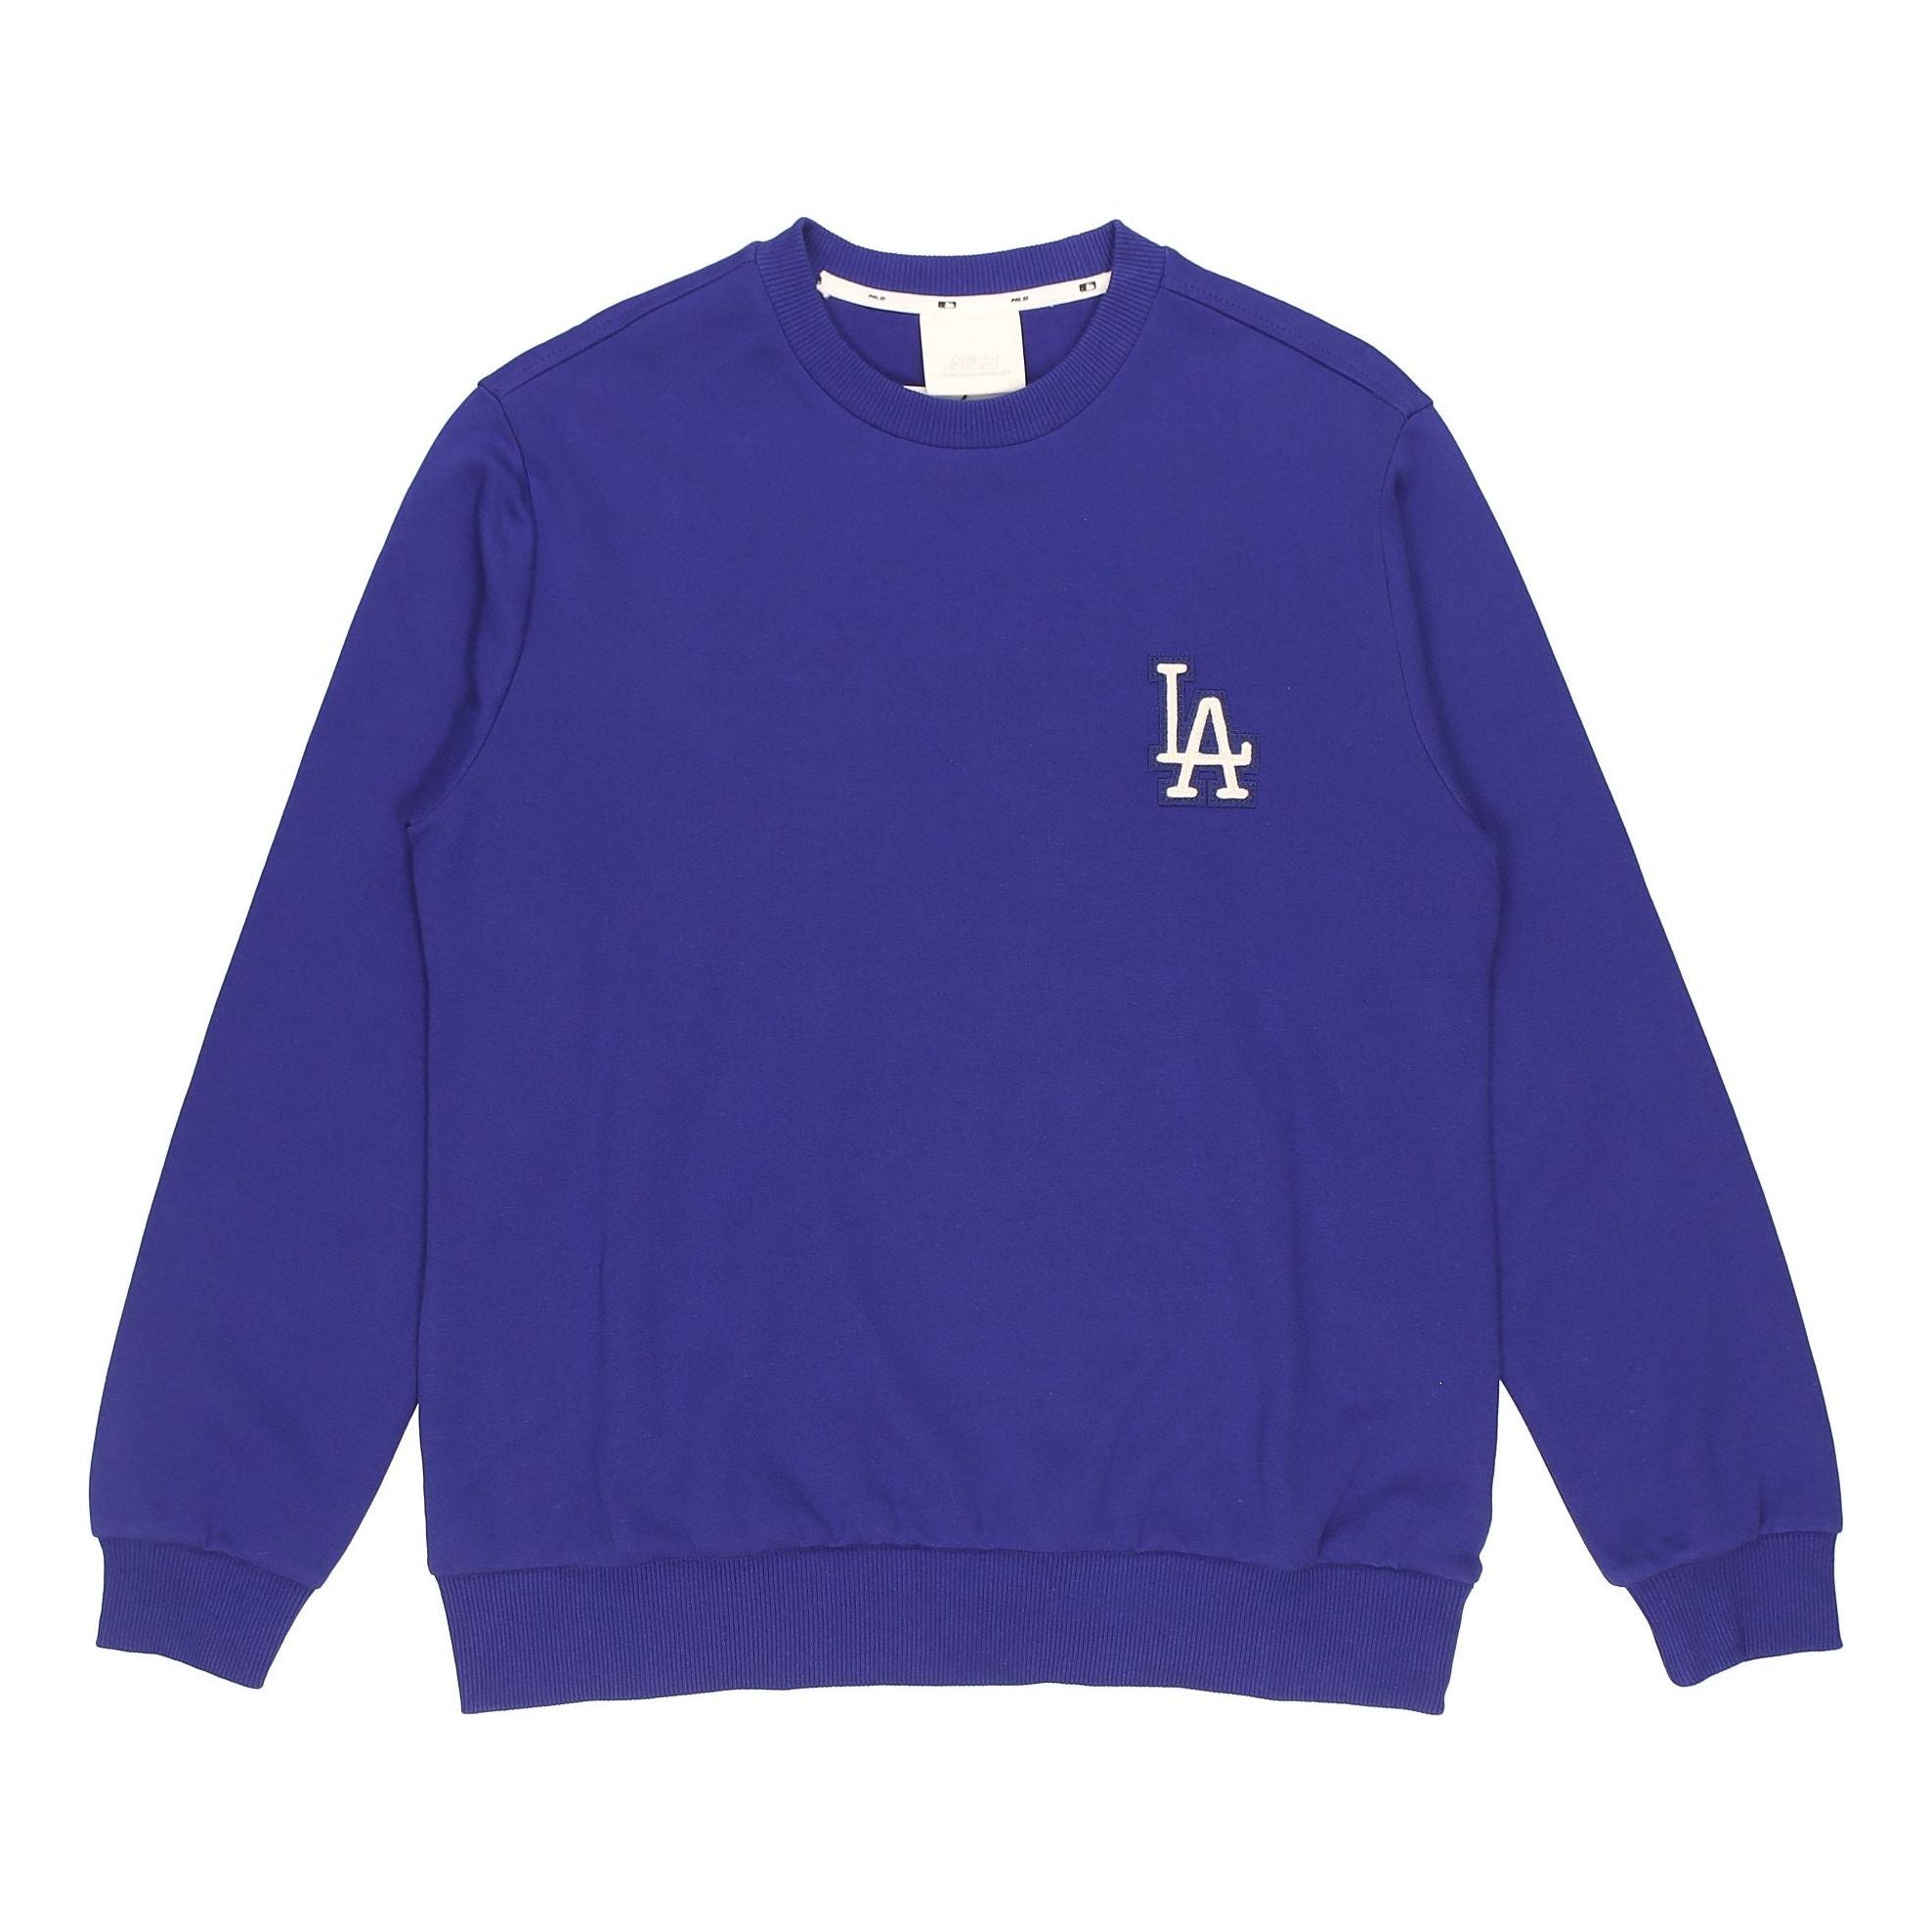 MLB Unisex NY/LA Round-neck Sweatshirt Blue 31MT01941-07U